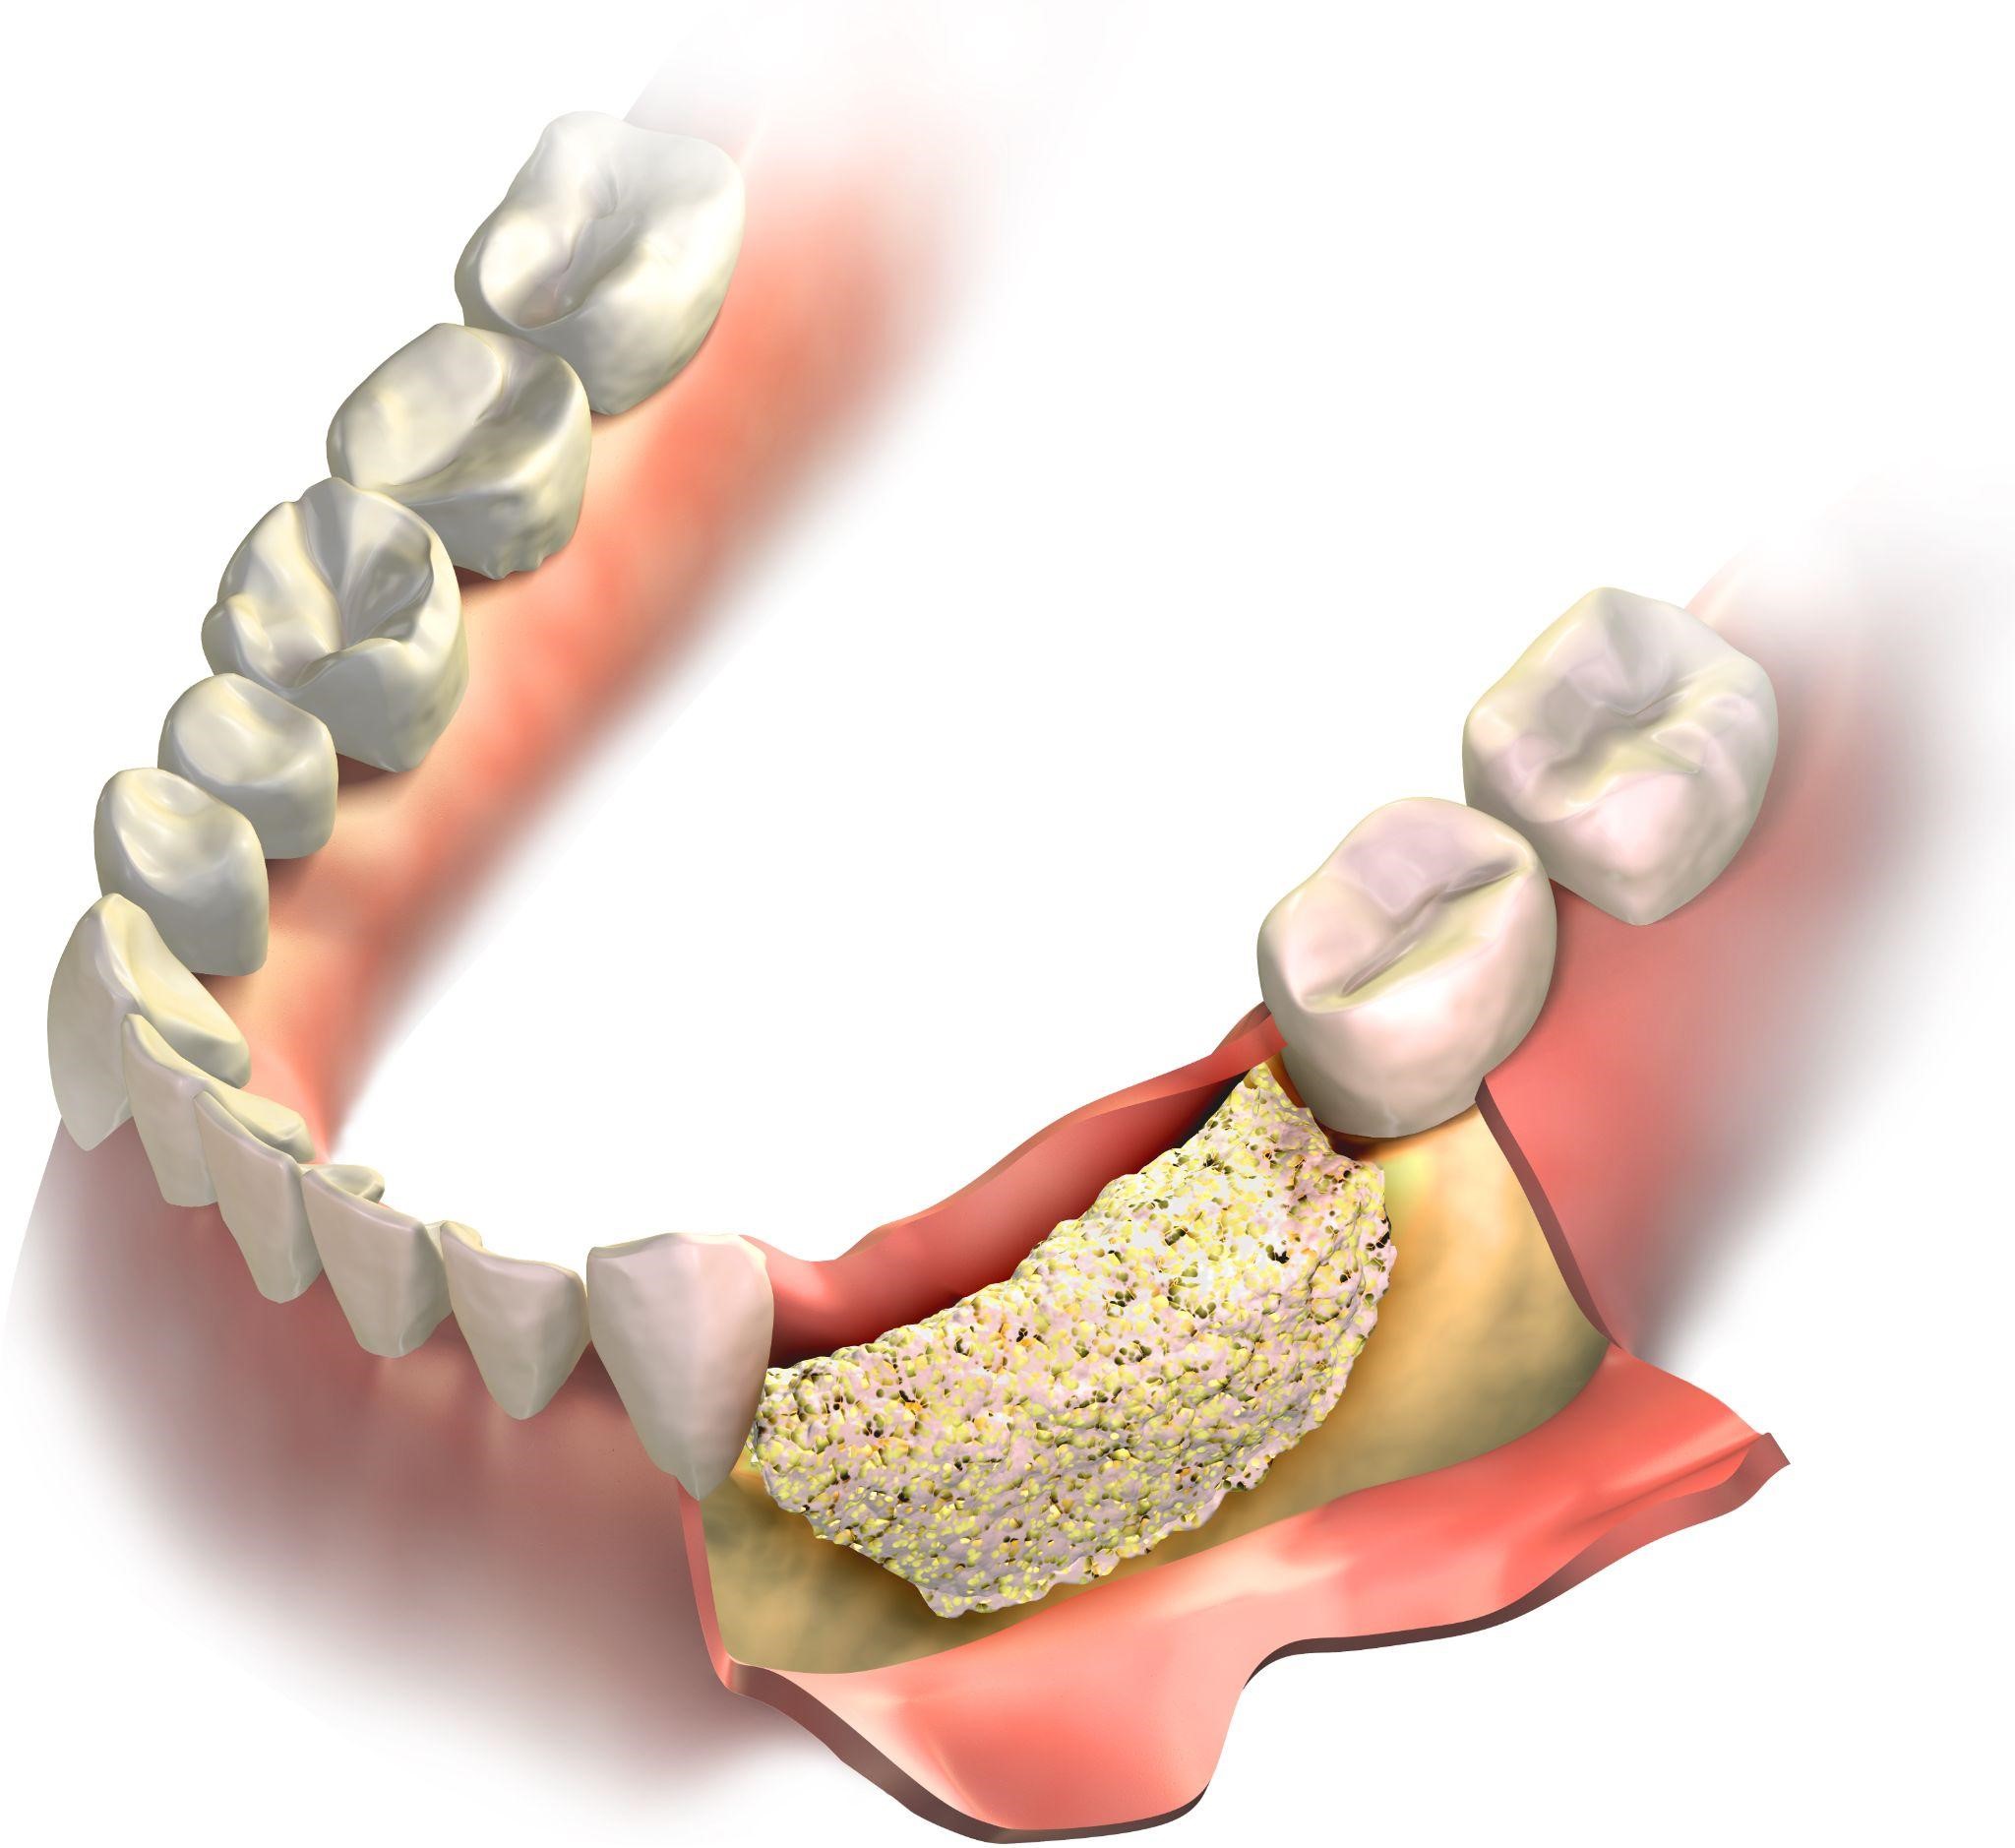 Зуб без кости. Остеопластика костной ткани челюстей. Костная пластика (остеопластика). Синус-лифтинг (костная пластика, остеопластика) закрытый. Пластика костной ткани при имплантации.